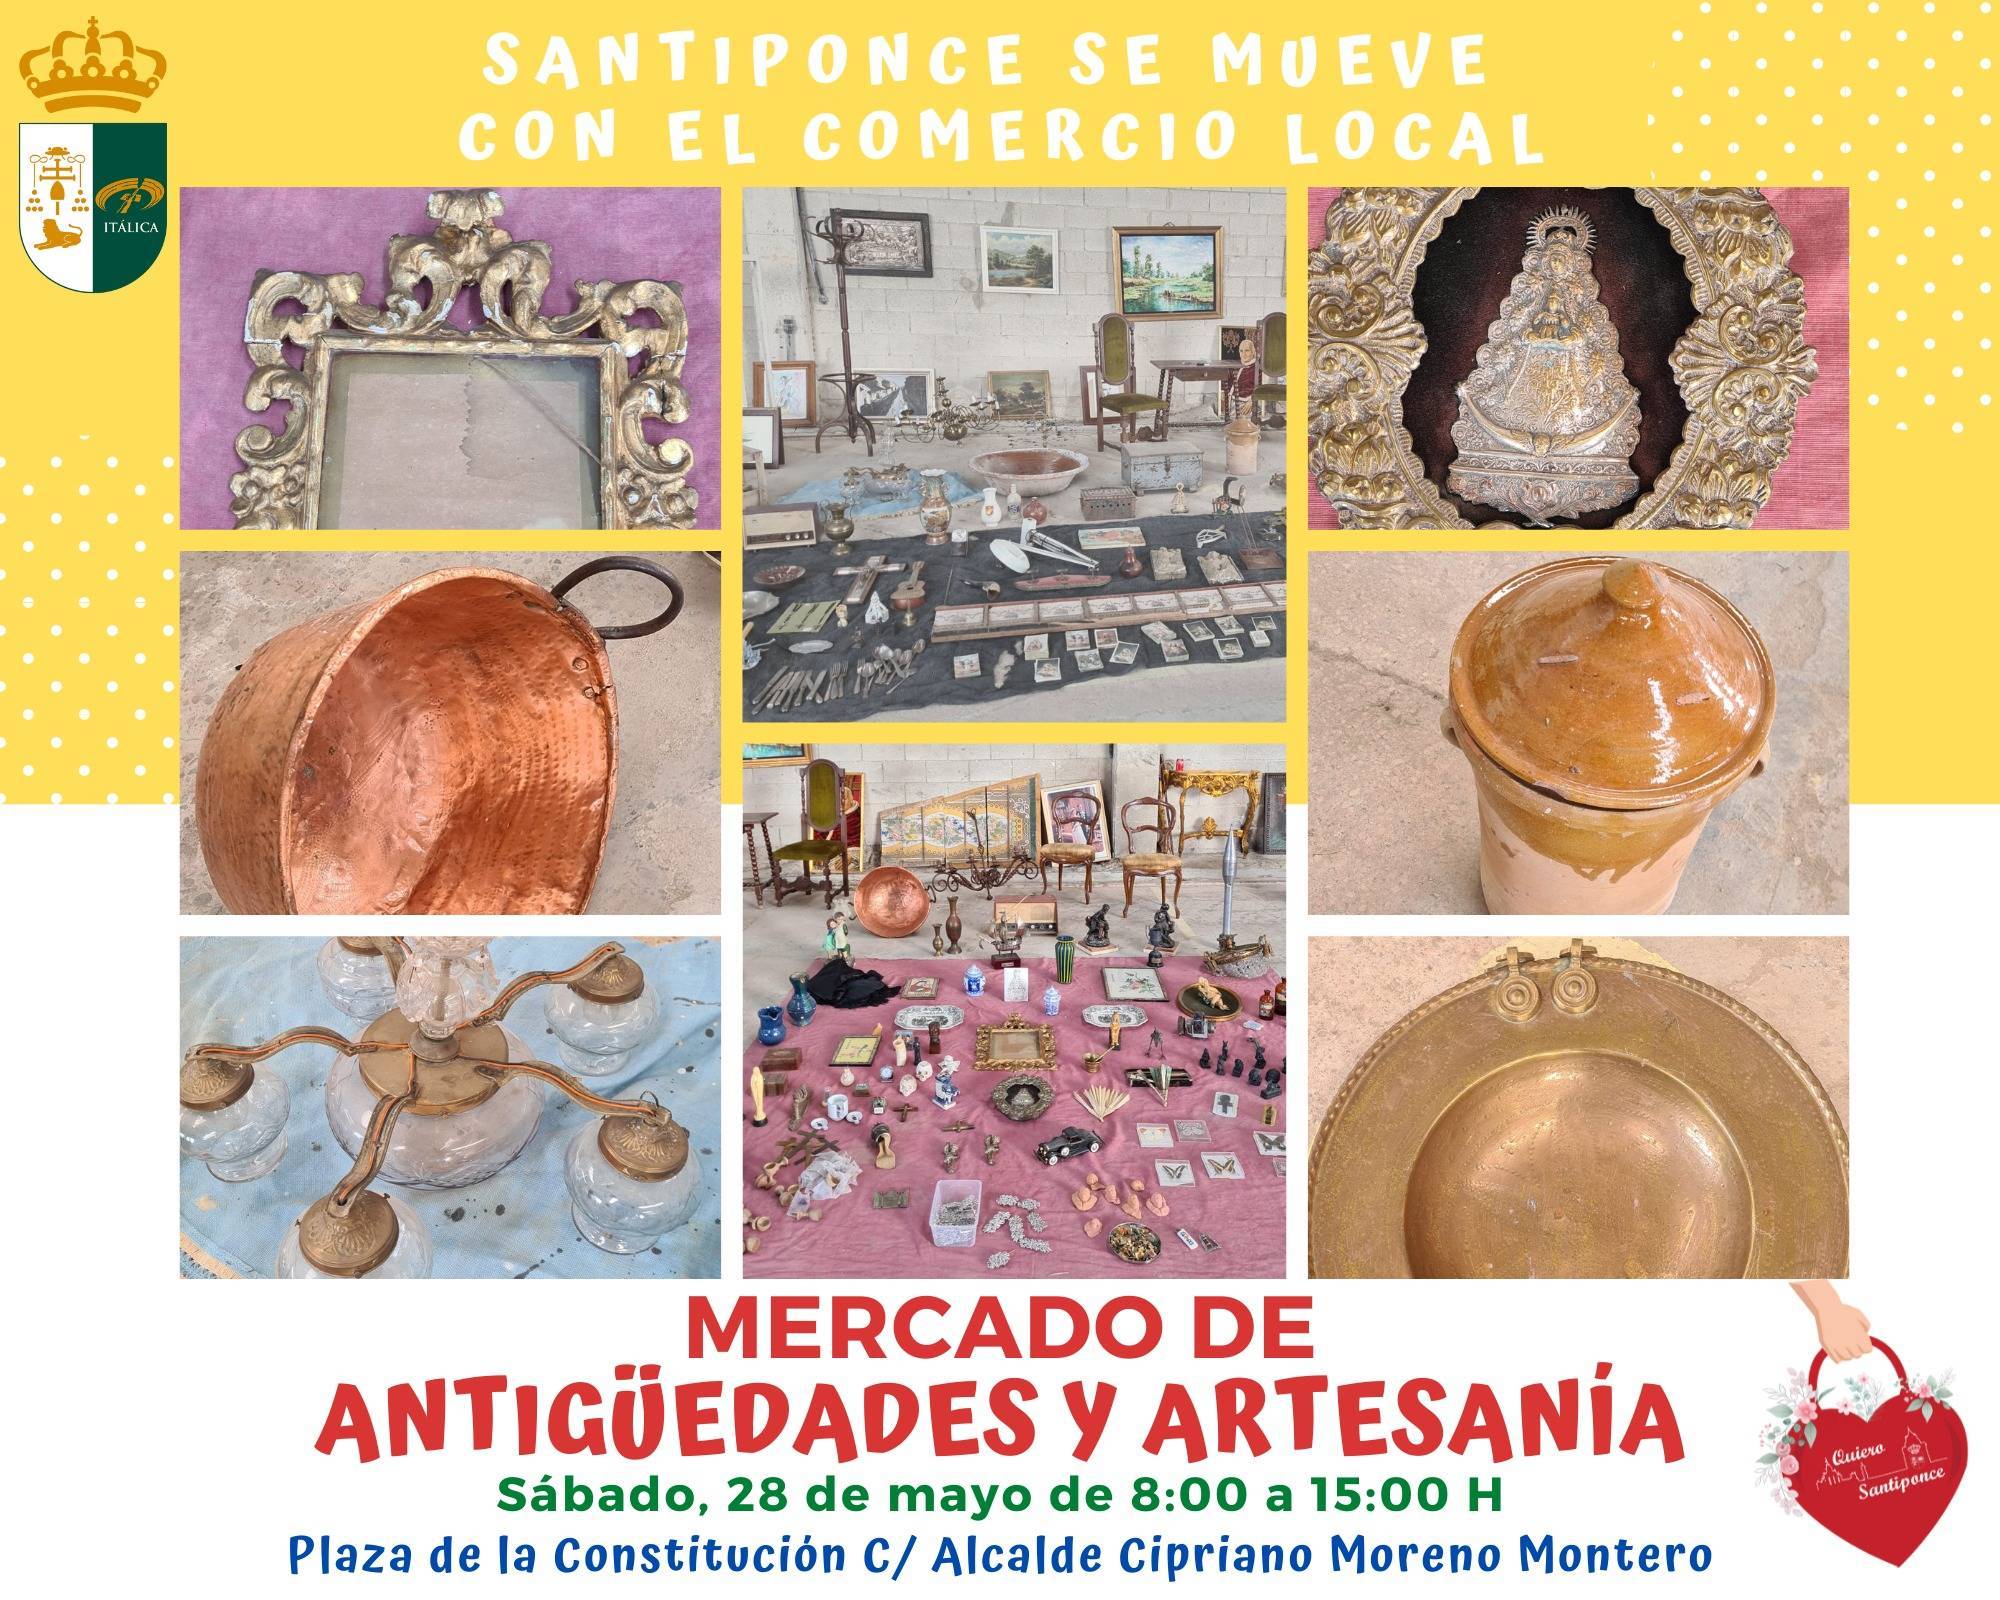 Mercado de antigüedades y artesanía (2022) - Santiponce (Sevilla)